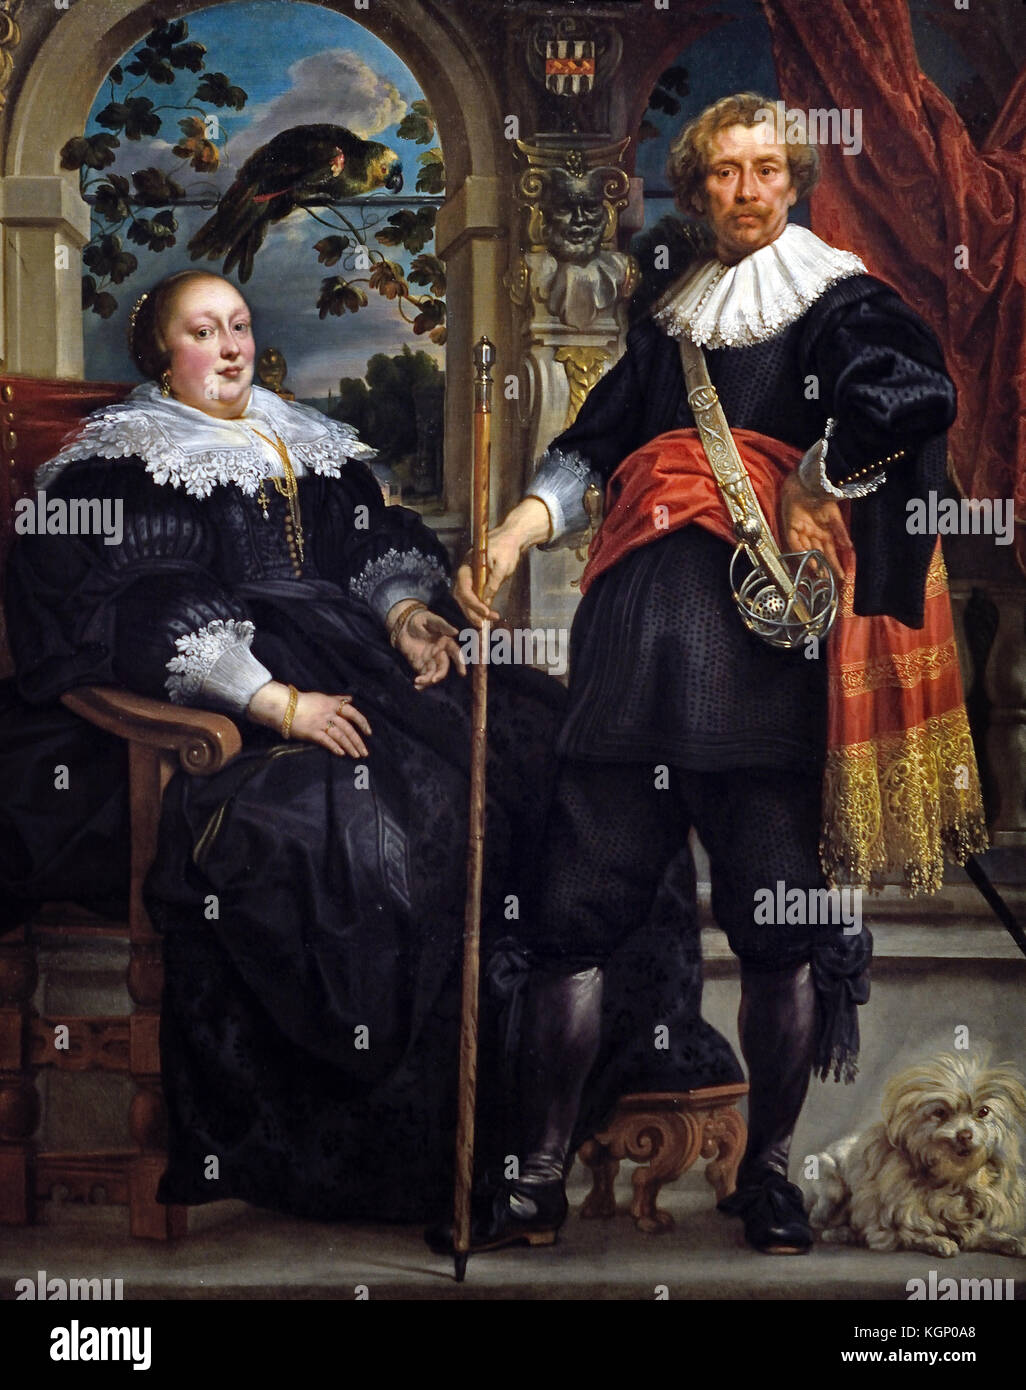 Portrait von Govaert van Surpele und seine Frau 1636-8 Jacob Jordaens Jacob (1593-1678) Jacques Jordaens 1593 - 1678 flämischen Maler, Zeichner und tapestry Designer für seine Geschichte Gemälde, Genreszenen und Porträts bekannt. Belgien, Belgien, Flämische, Stockfoto